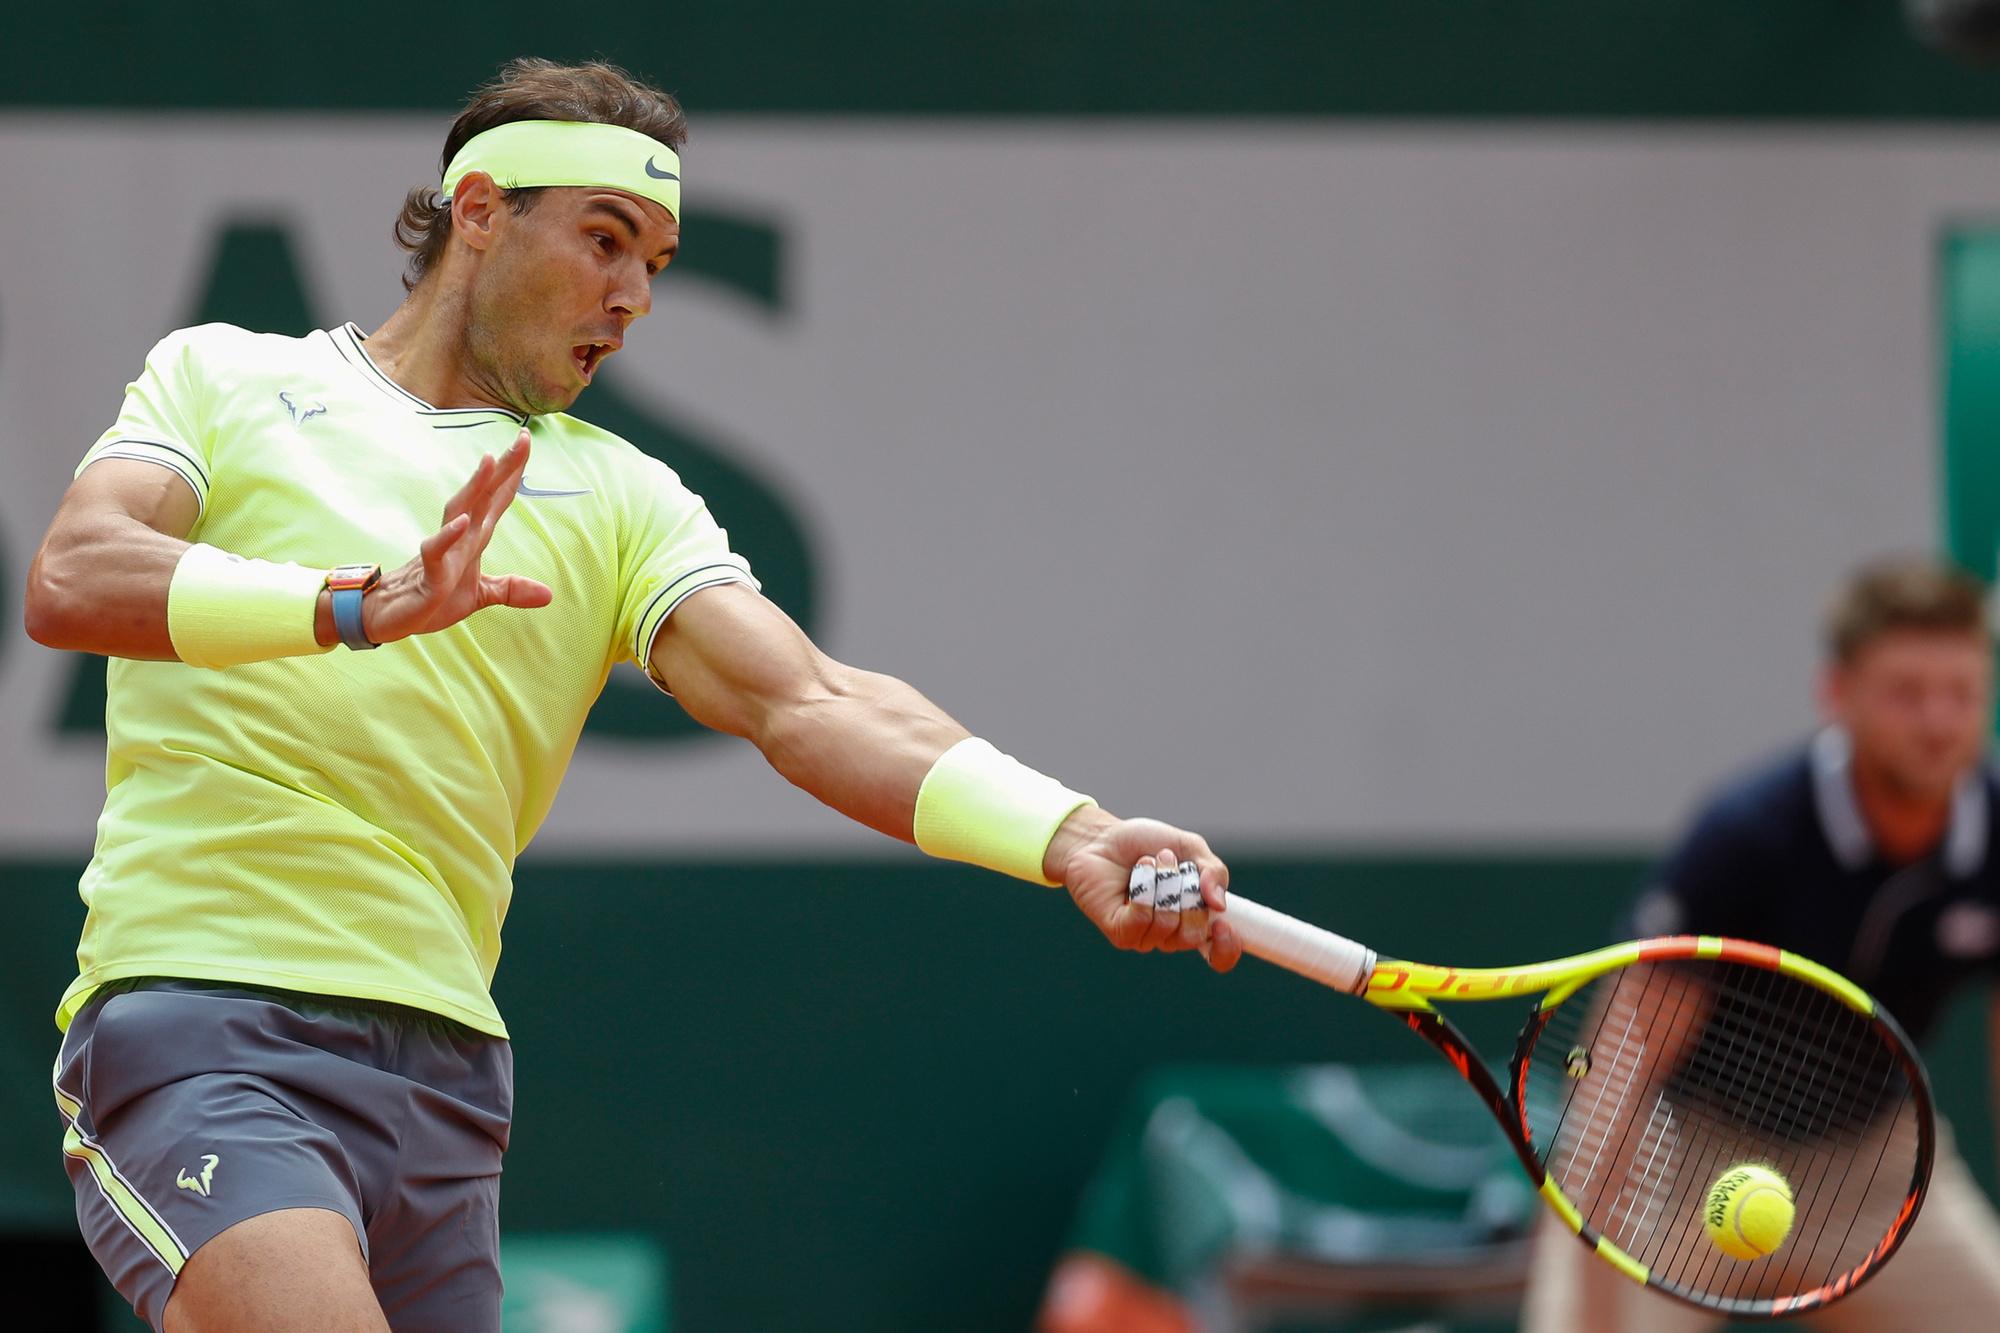 Rafael Nadal zet zoveel kracht en topspin op zijn forehand dat daar geregeld een schouder- of elleboogblessure van komt.